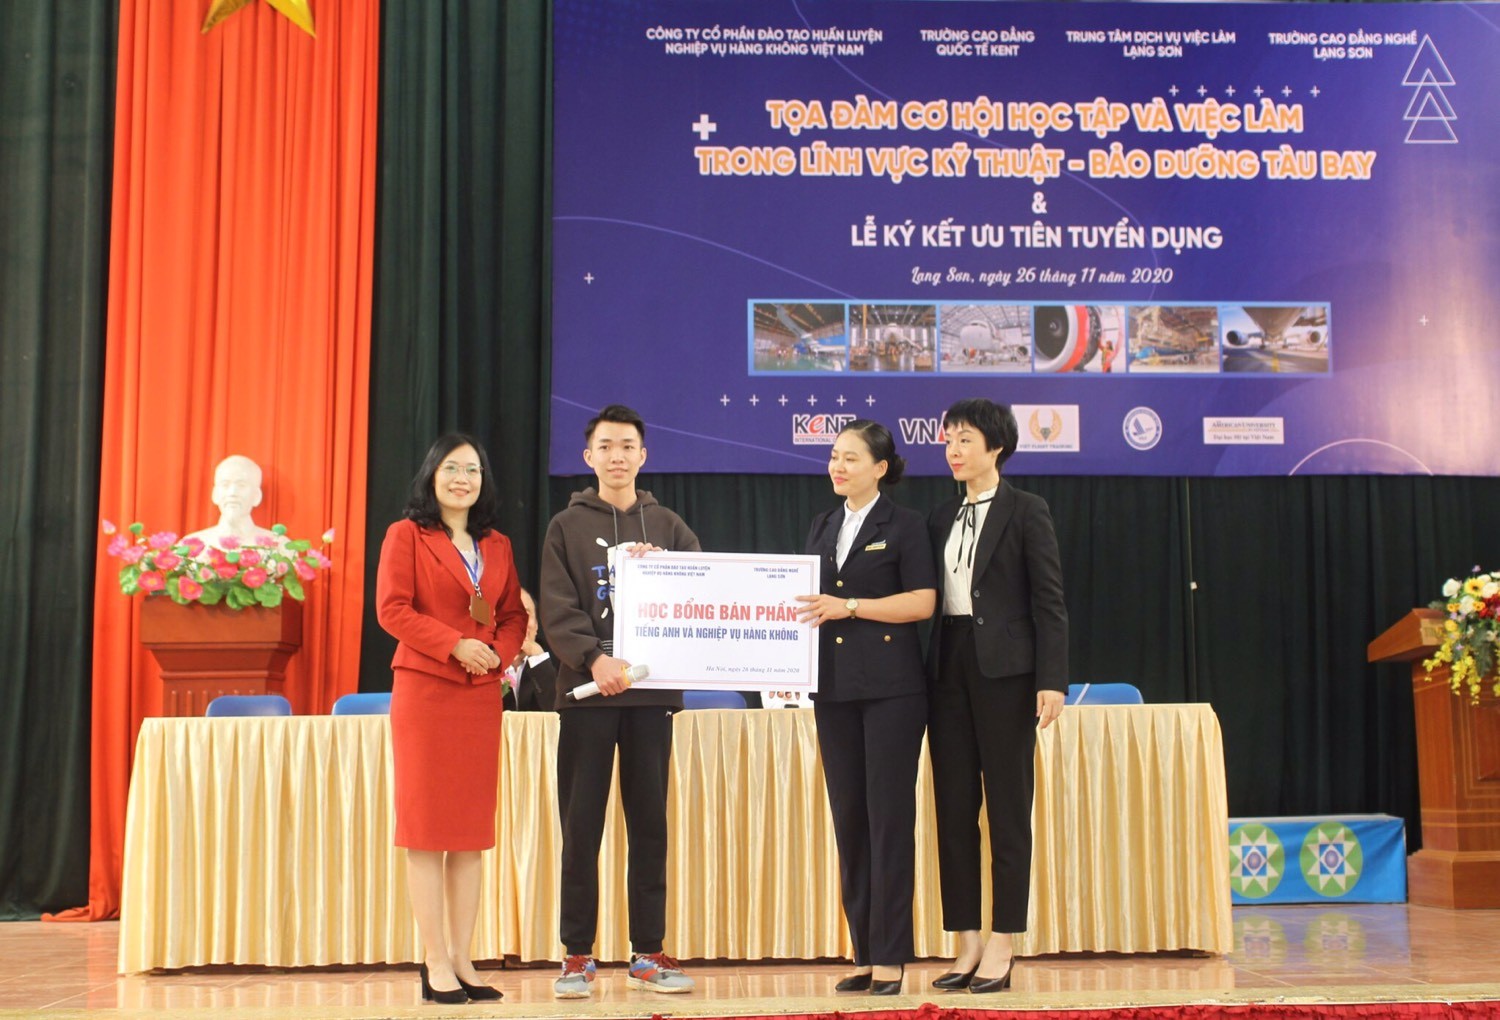 Trung tâm Đào tạo Hàng không Việt Nam mở các khóa học trang bị kỹ năng Tiếng anh và nghiệp vụ hàng không với học bổng ưu đãi